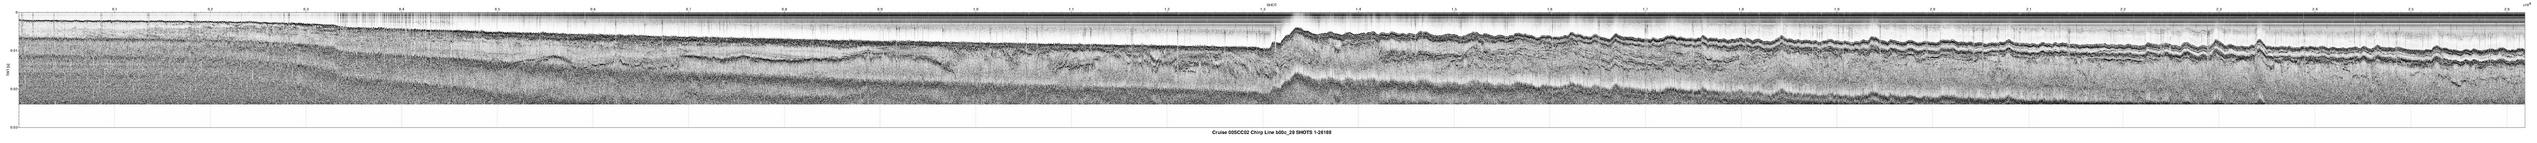 00SCC02 b00c_29 seismic profile image